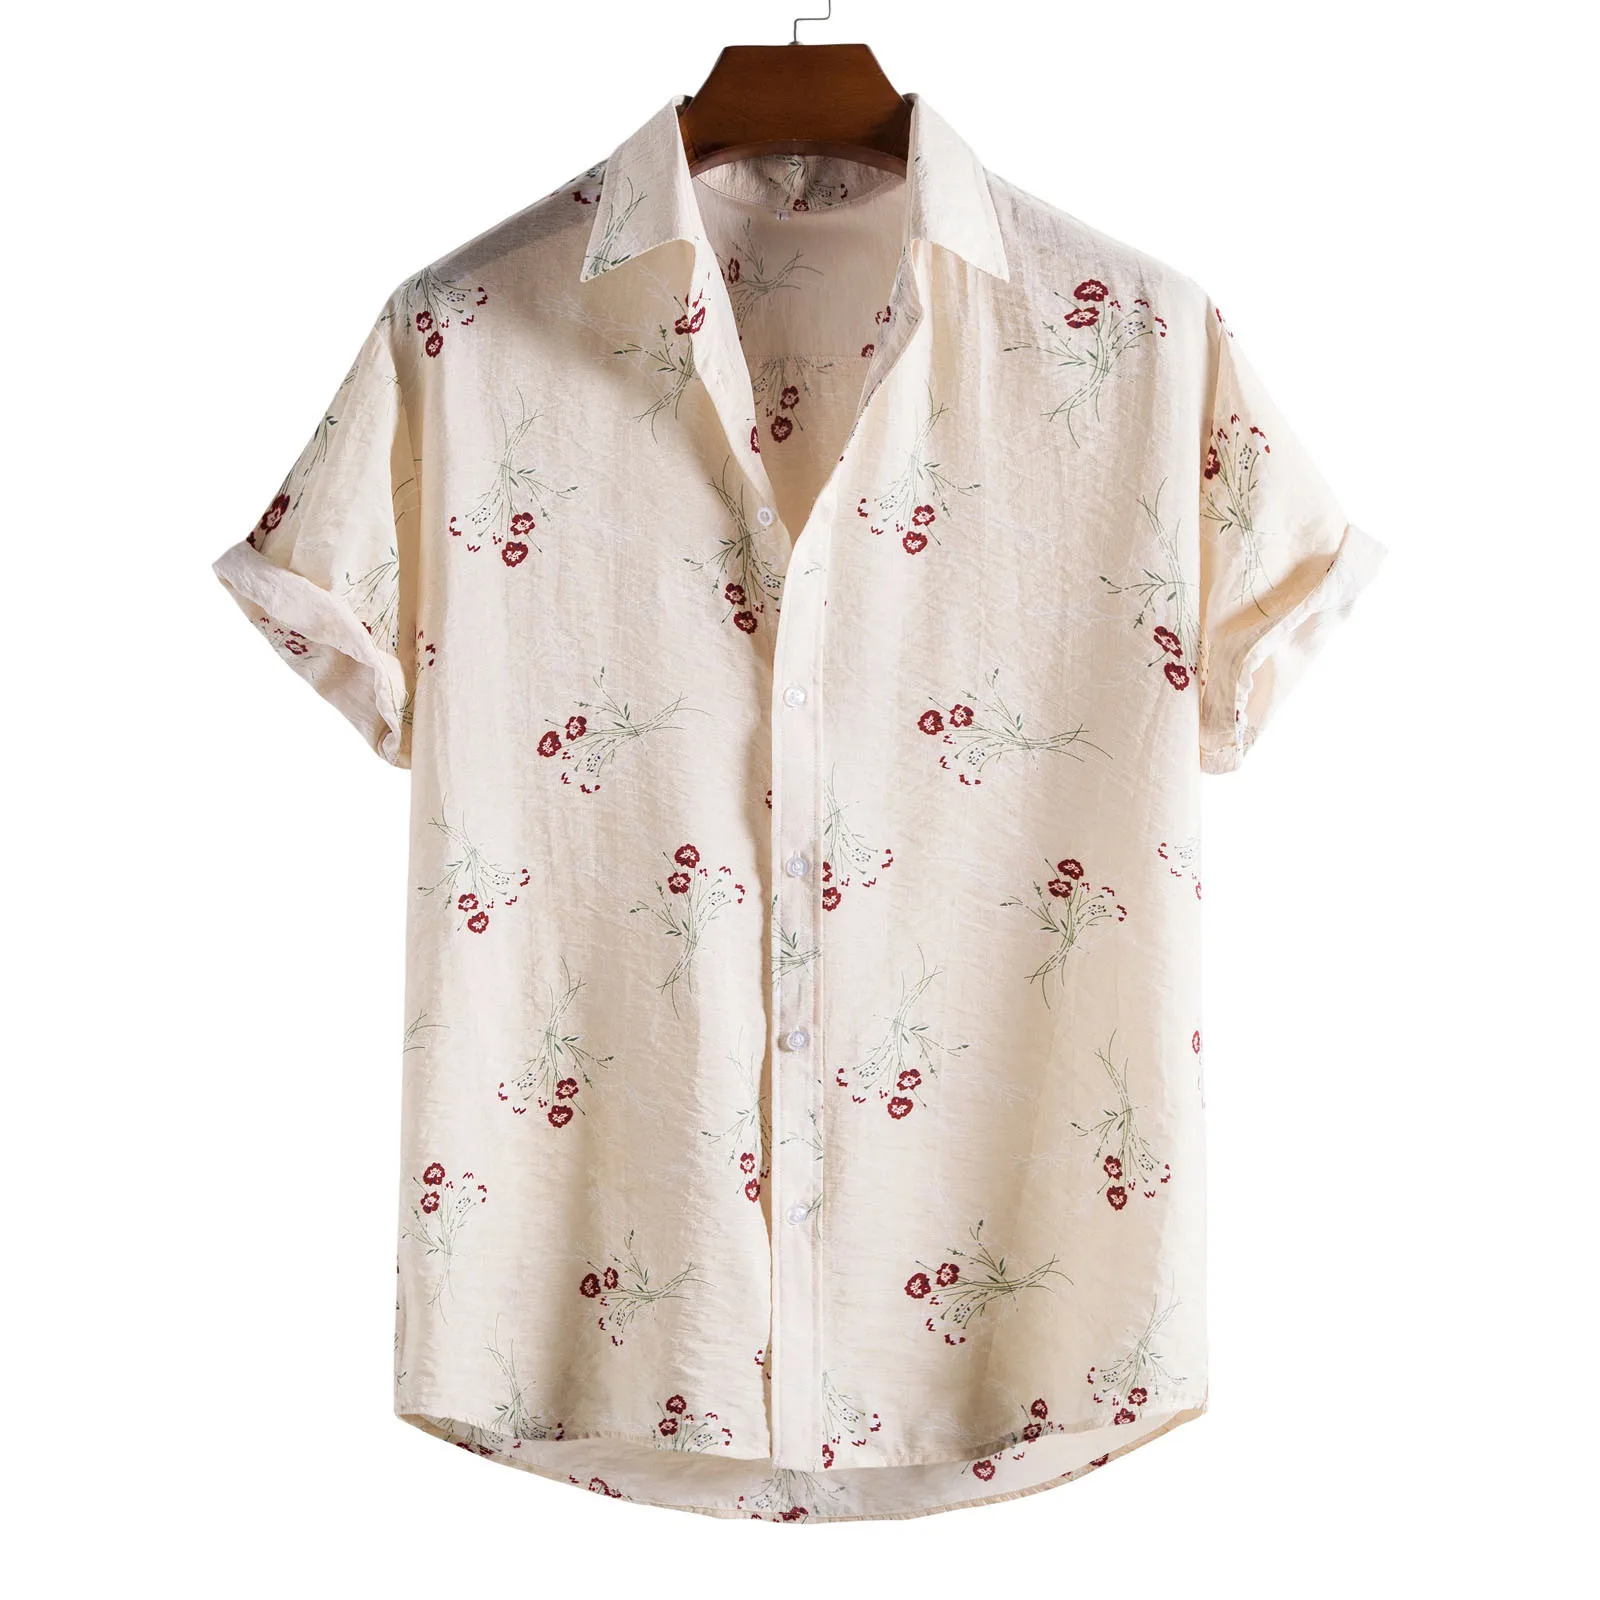 

Feitong Strawberry Printed Shirt Man Summer Tops Casual Loose Short Sleeve Top Blouse Hawaiian Shirts Camisa Masculina